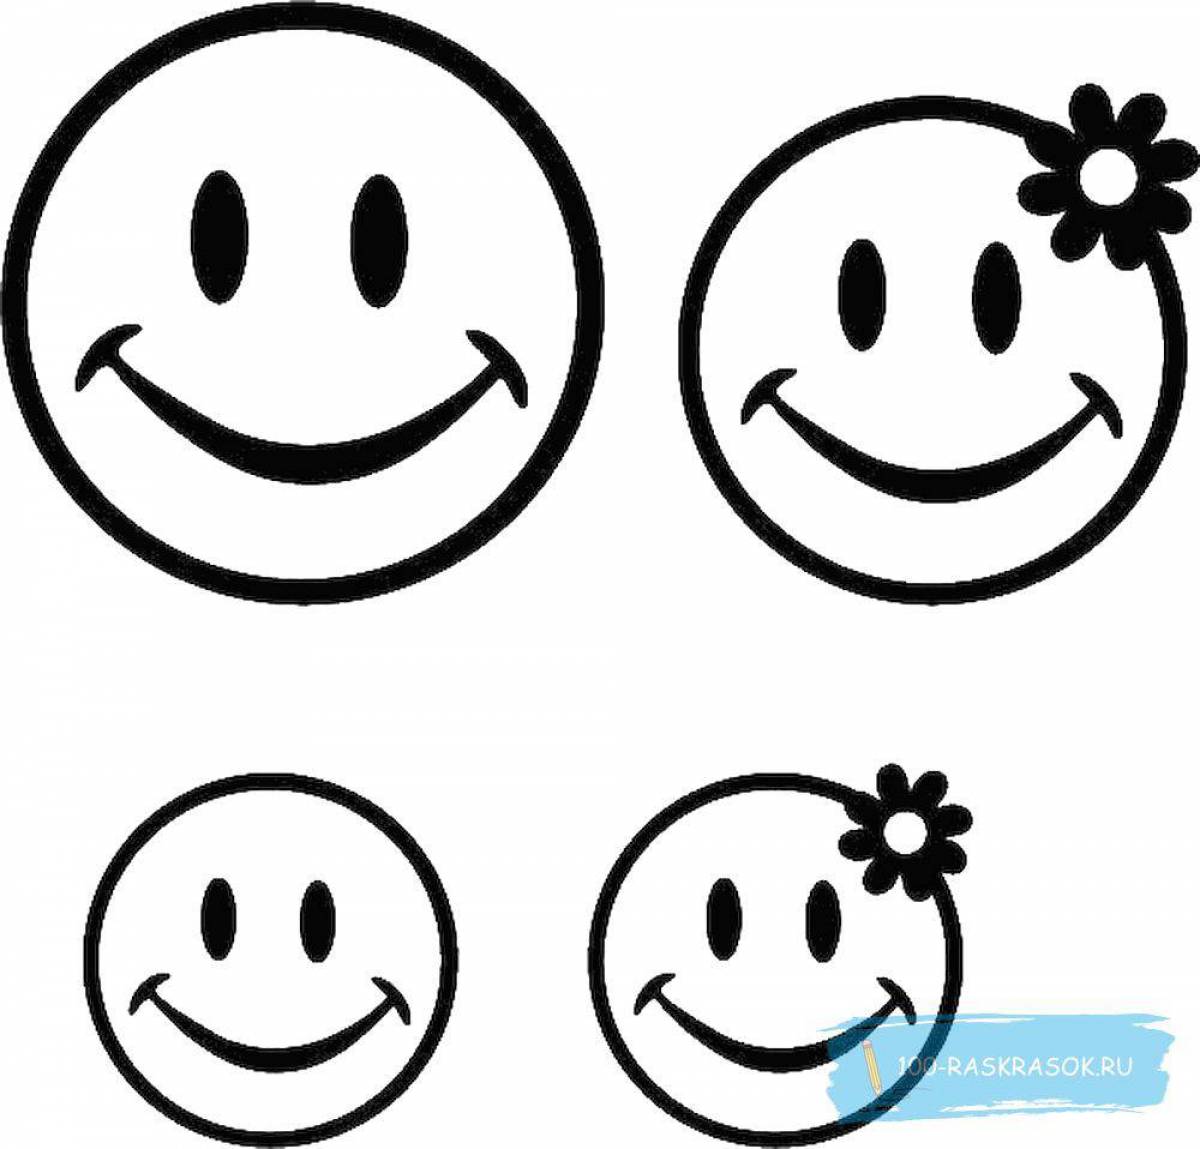 Adorable printable emoji coloring page